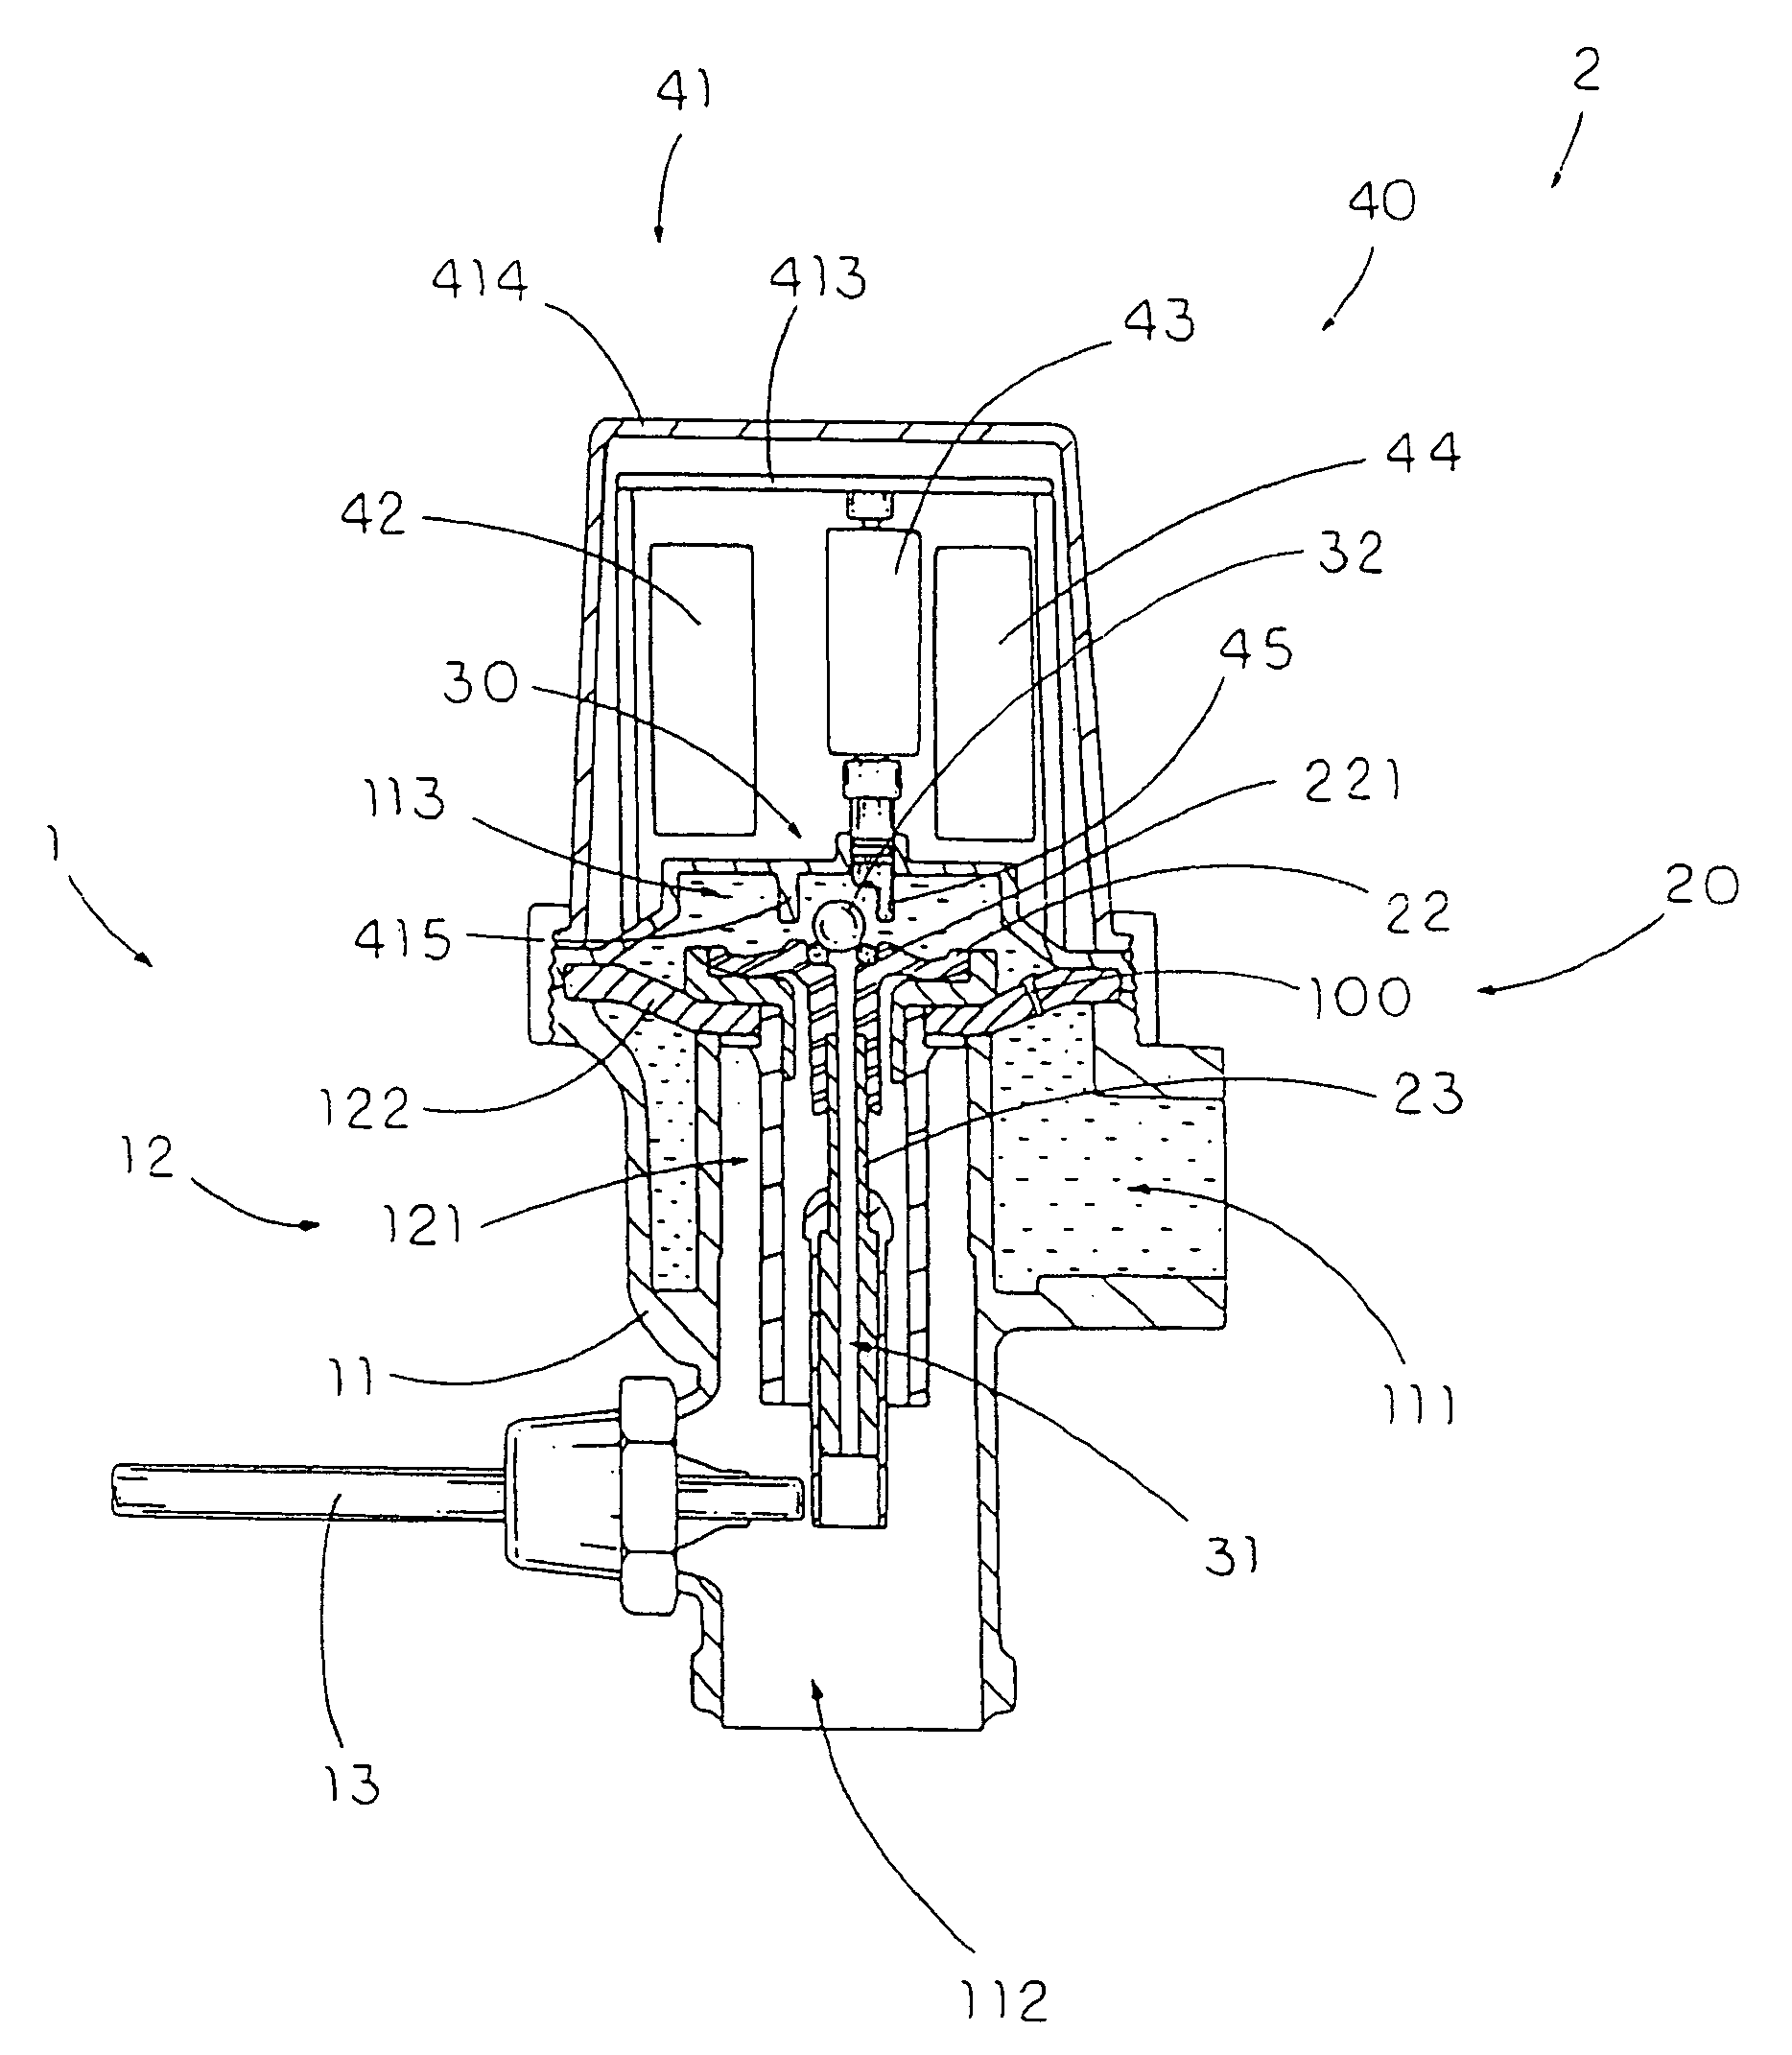 Actomatic flush actuation apparatus